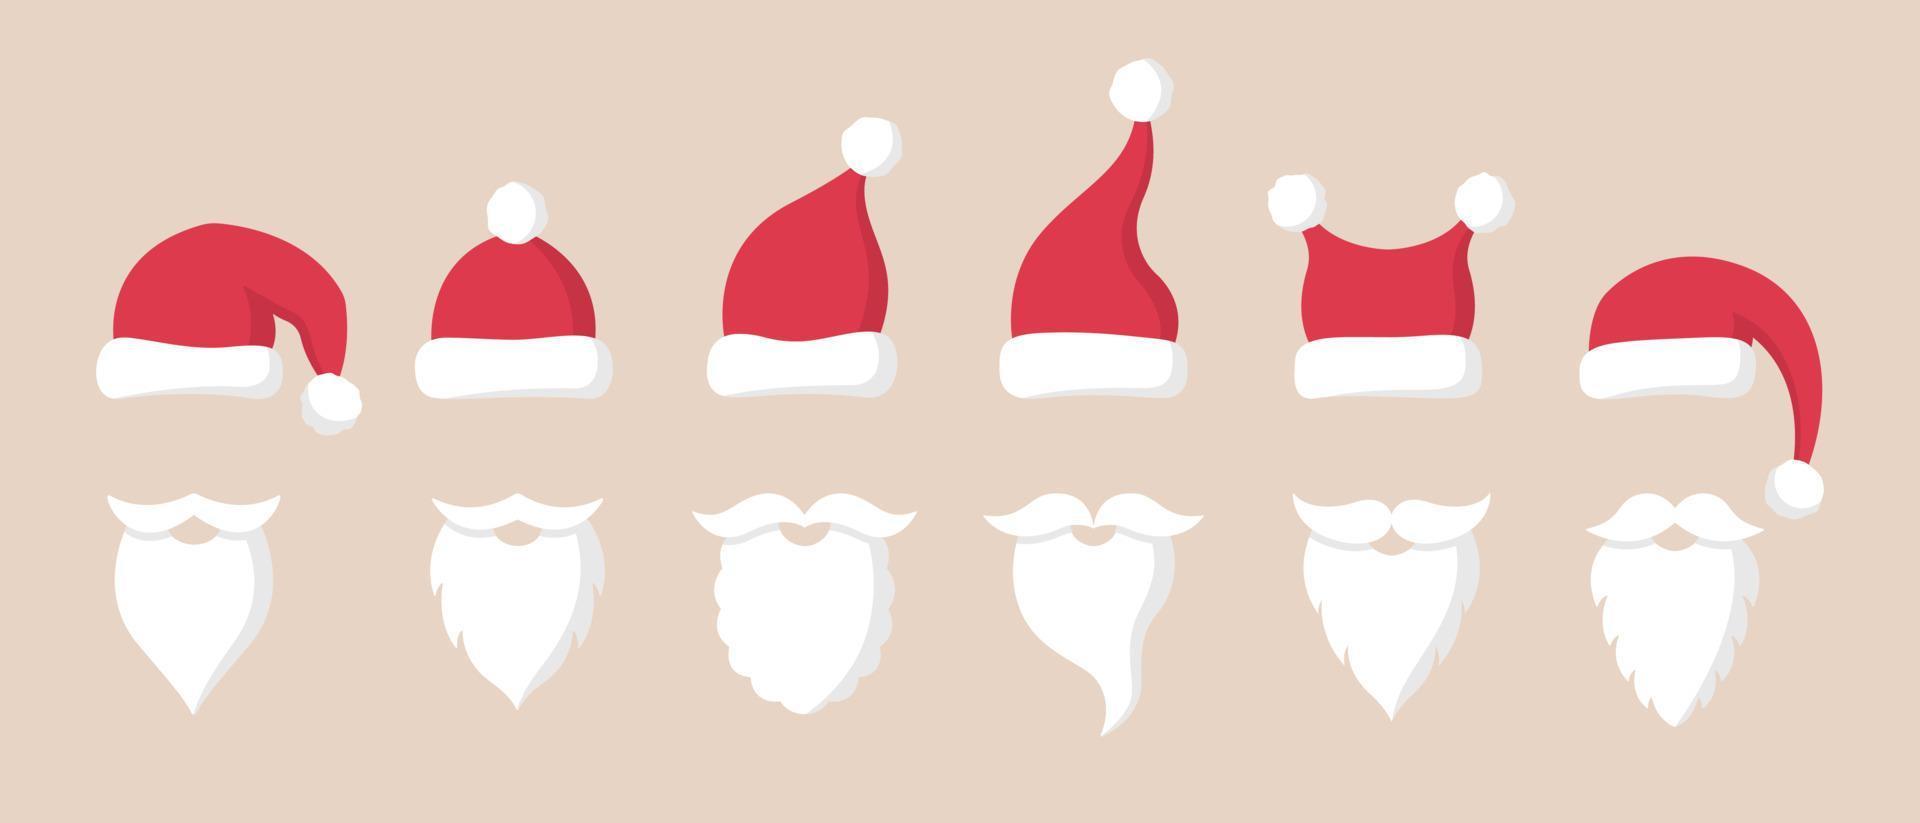 sammlung von weihnachtsmann-roten hüten, schnurrbart und bärten. weihnachtssymbole im flachen stil. vektor